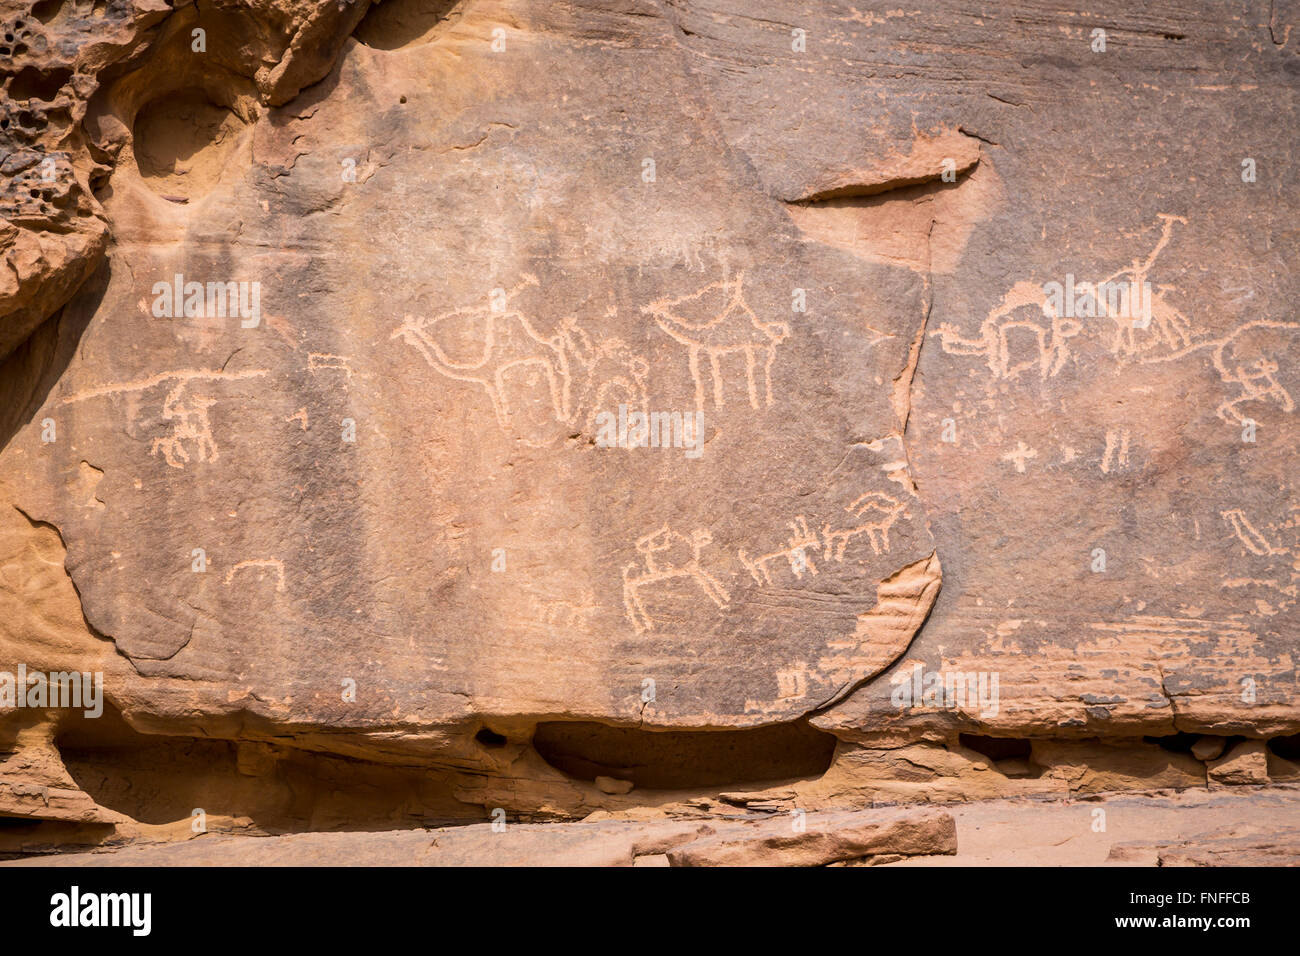 Petroglifos en la roca en el desierto de Wadi Rum del sur del Reino Hachemita de Jordania, Oriente Medio. Foto de stock